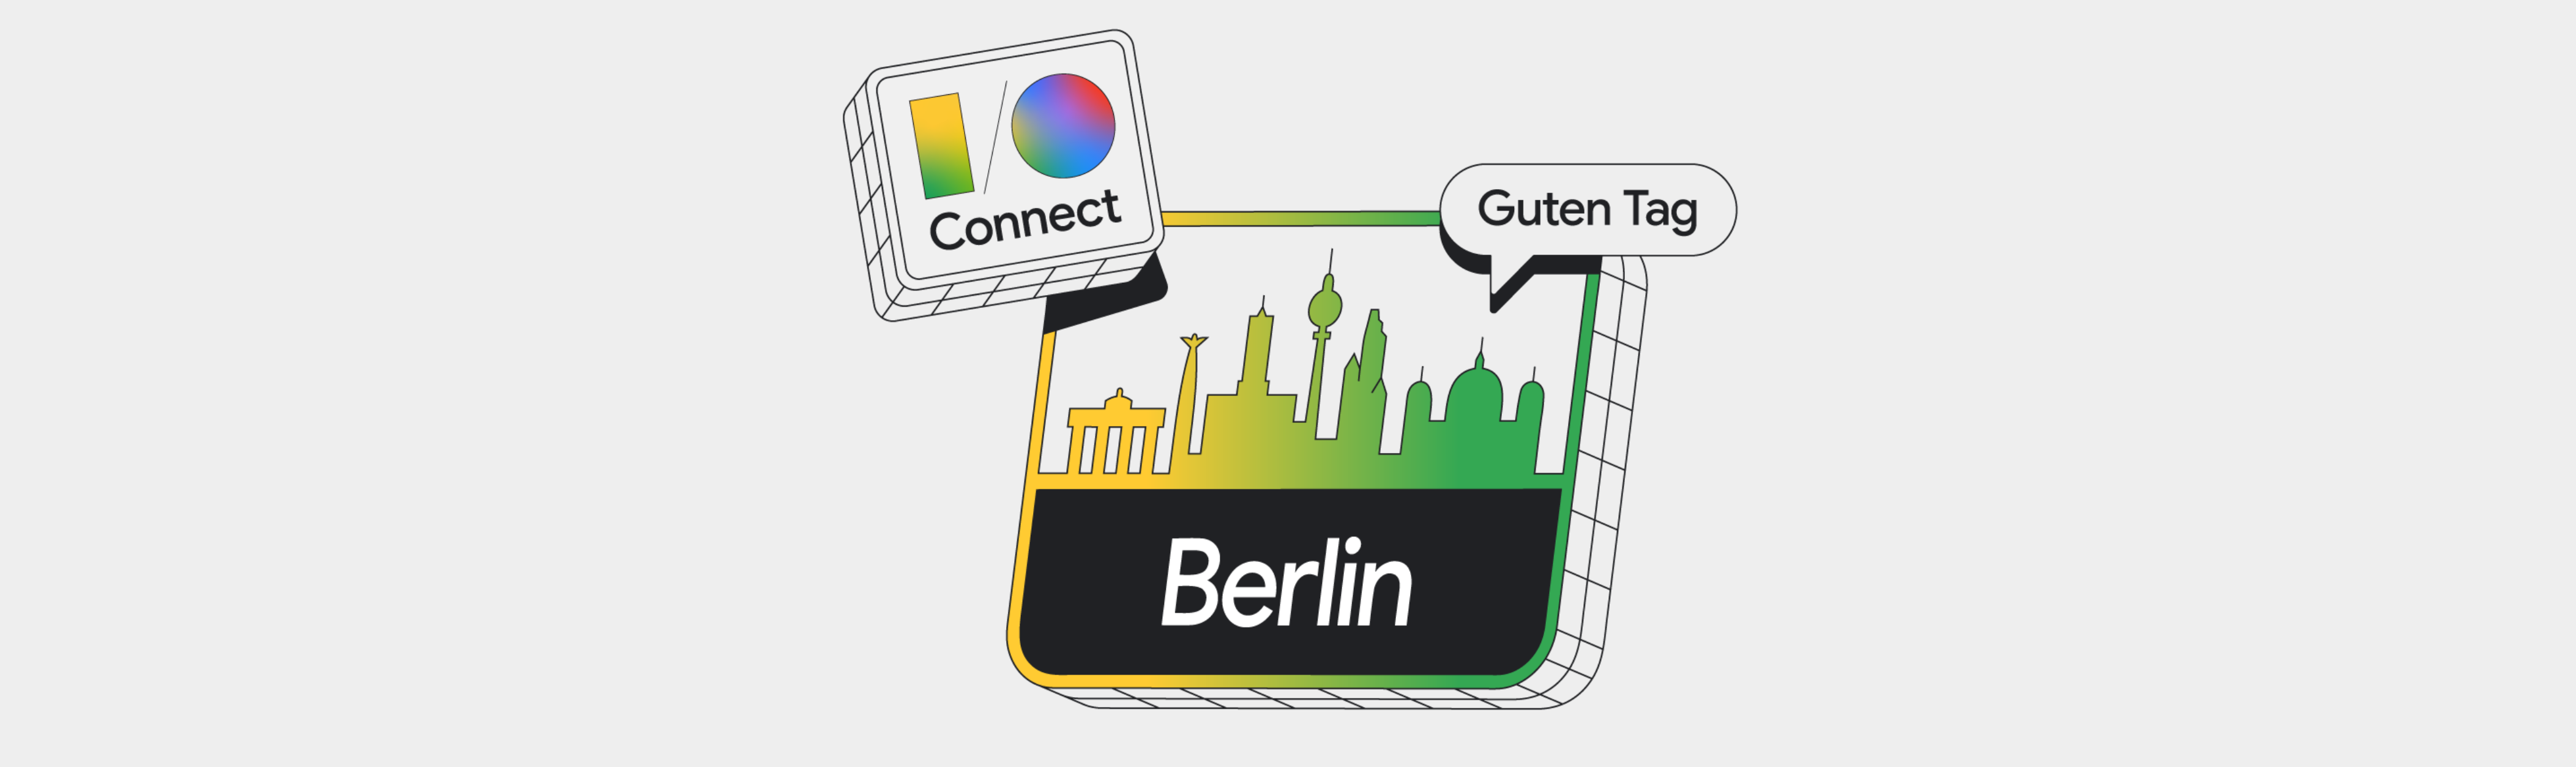 IO-Connect-Berlin-Header (1)